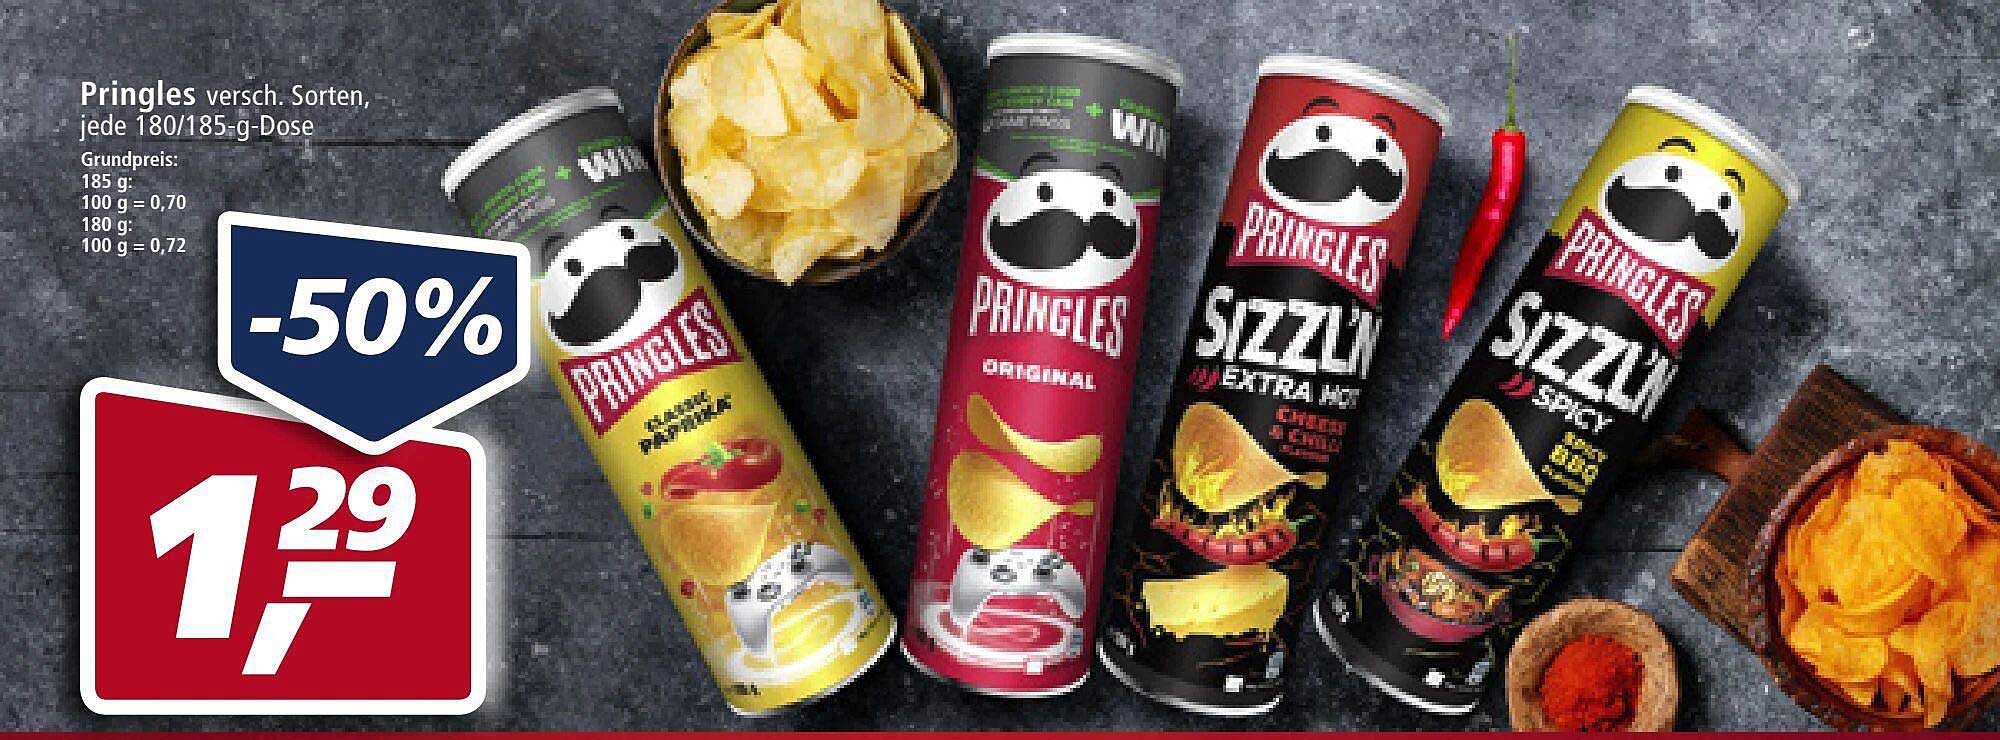 Real Pringles